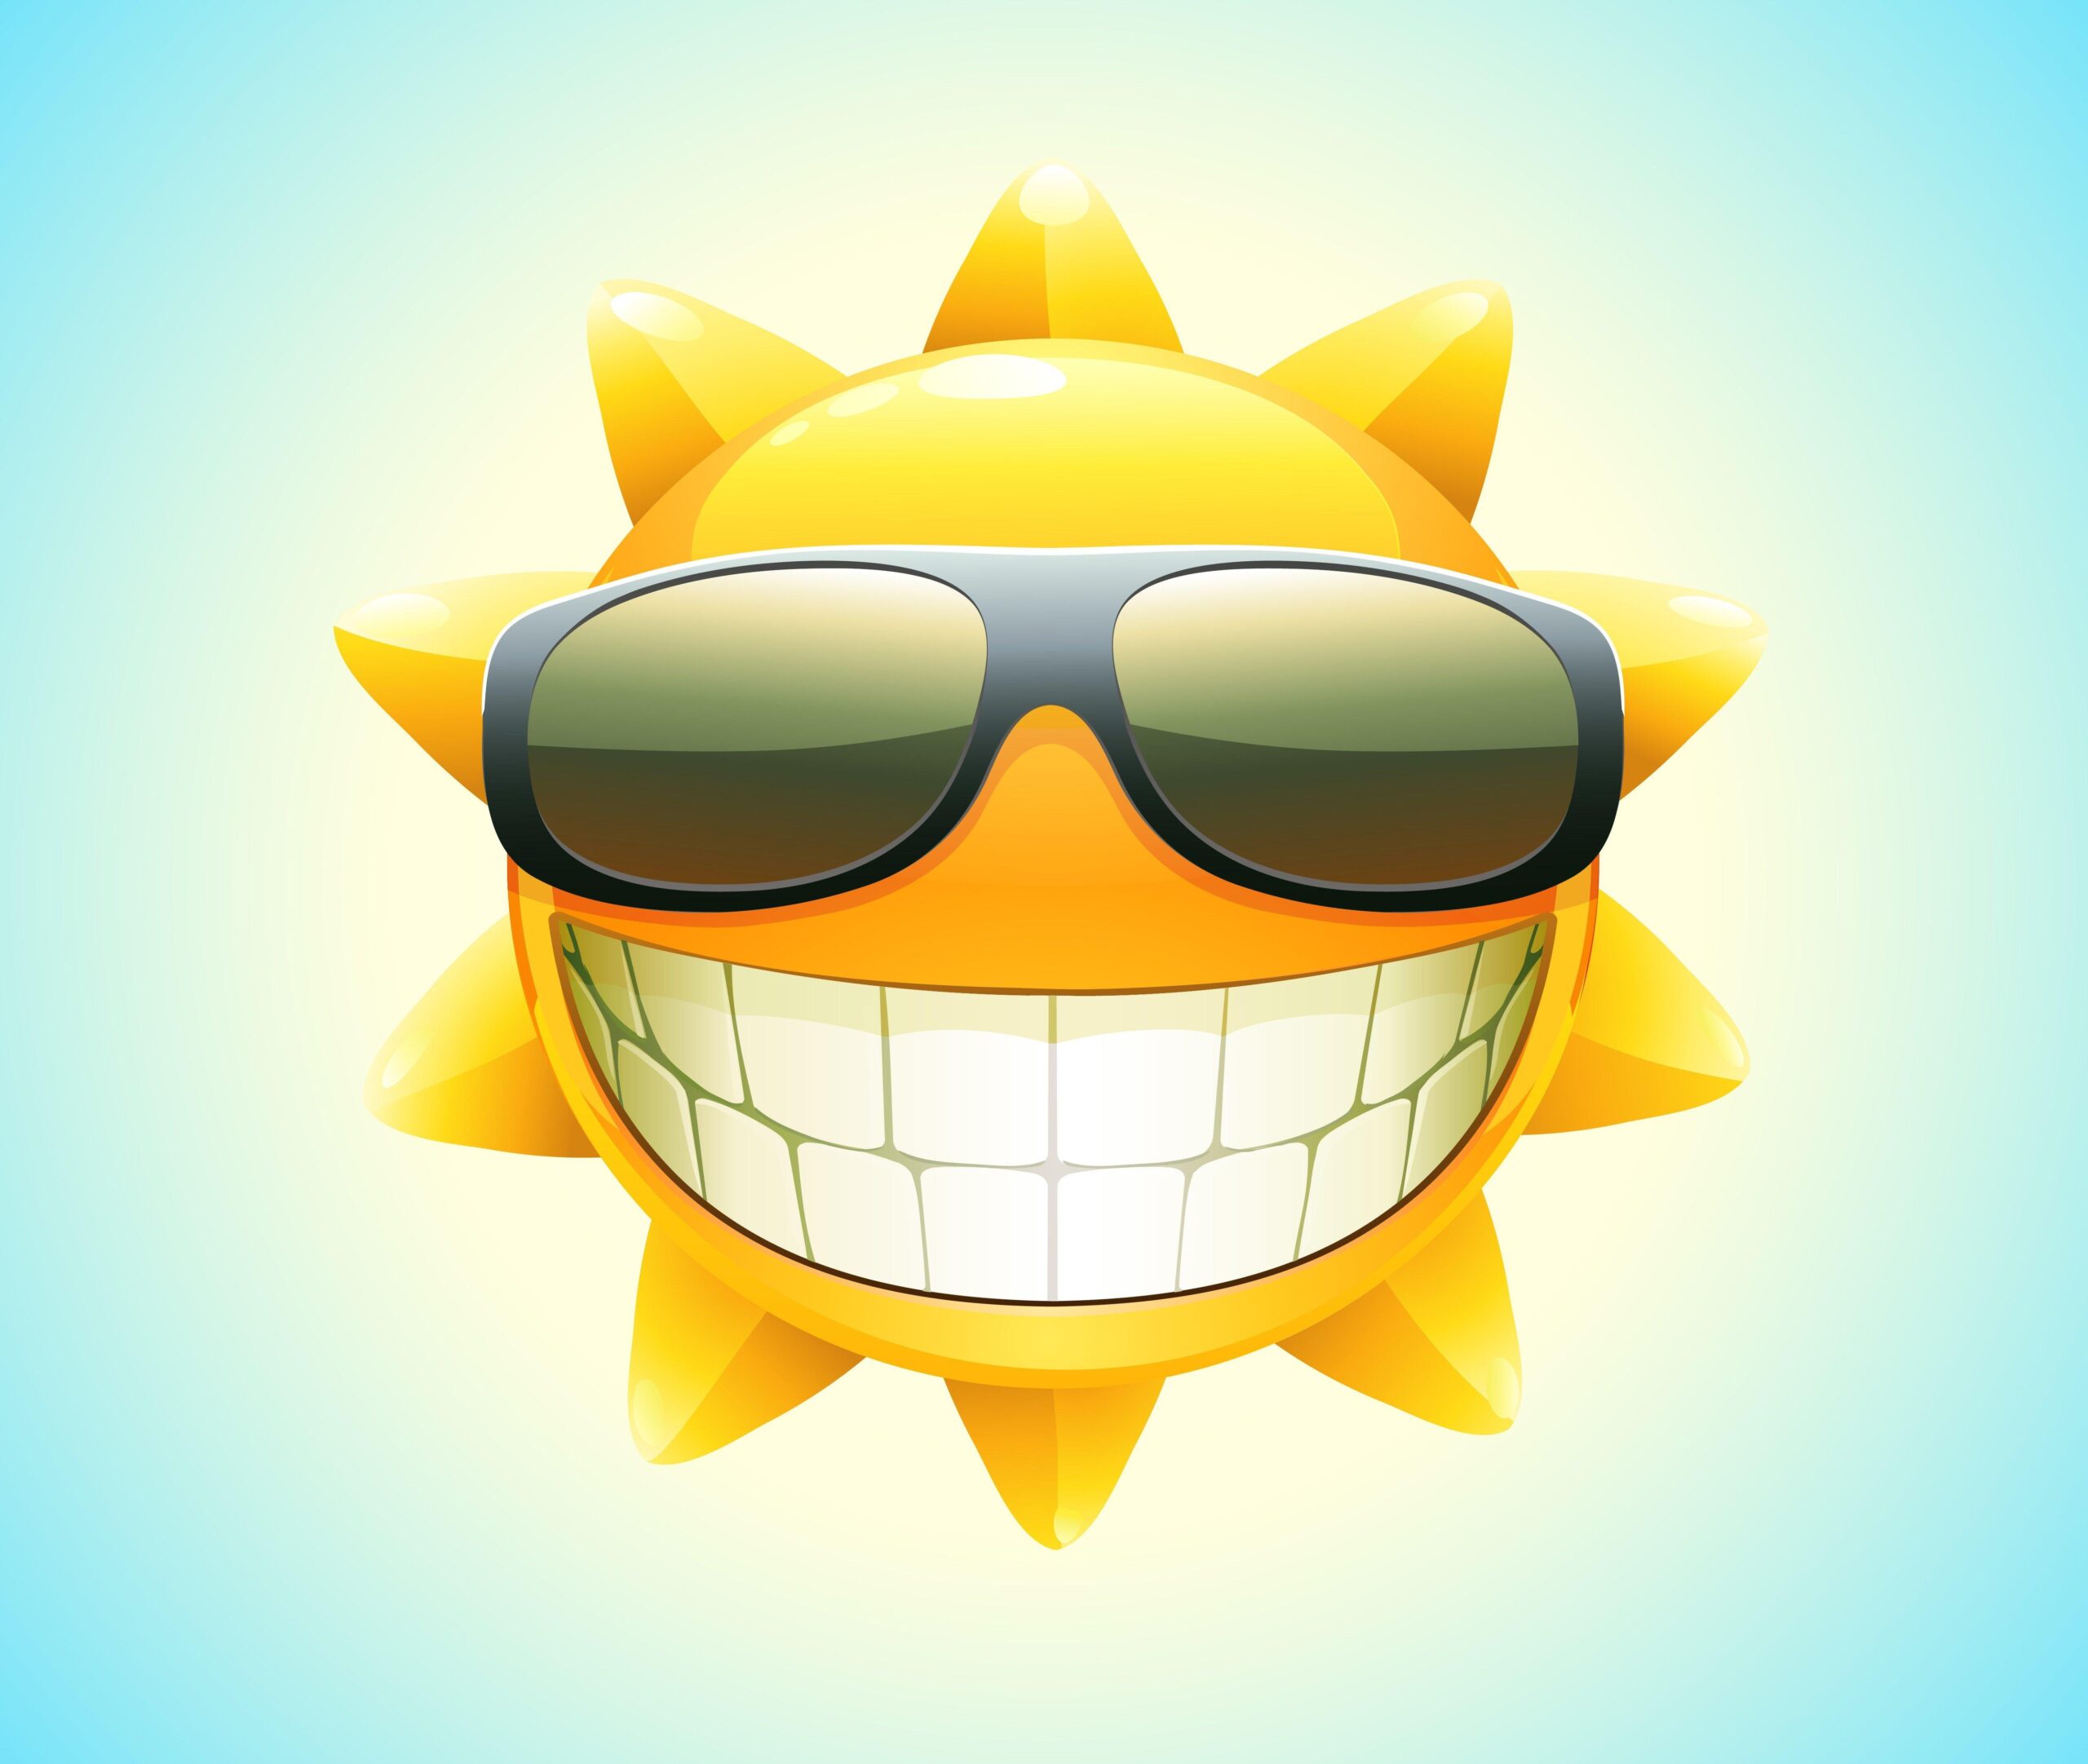 Cool Summer Sun Download Wallpaper